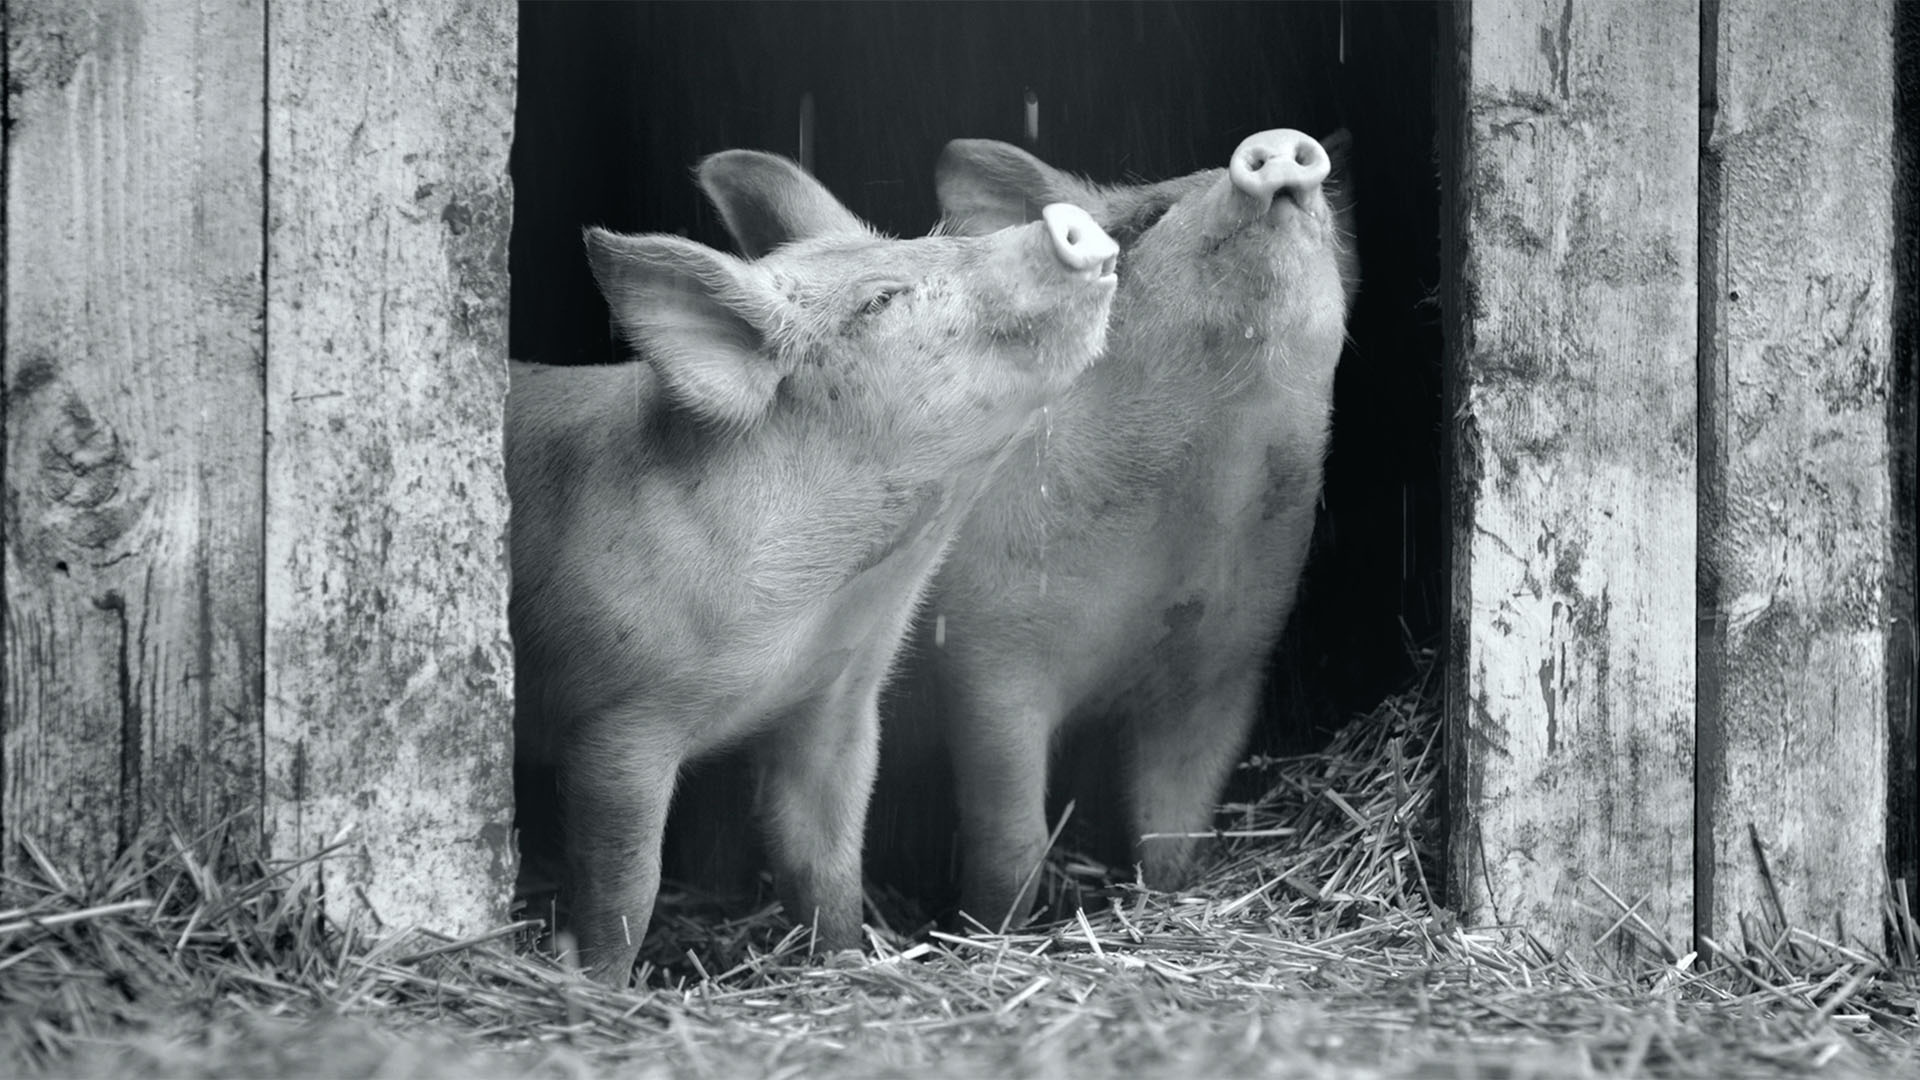 Trailer still frame from Gunda, two pigs black and white